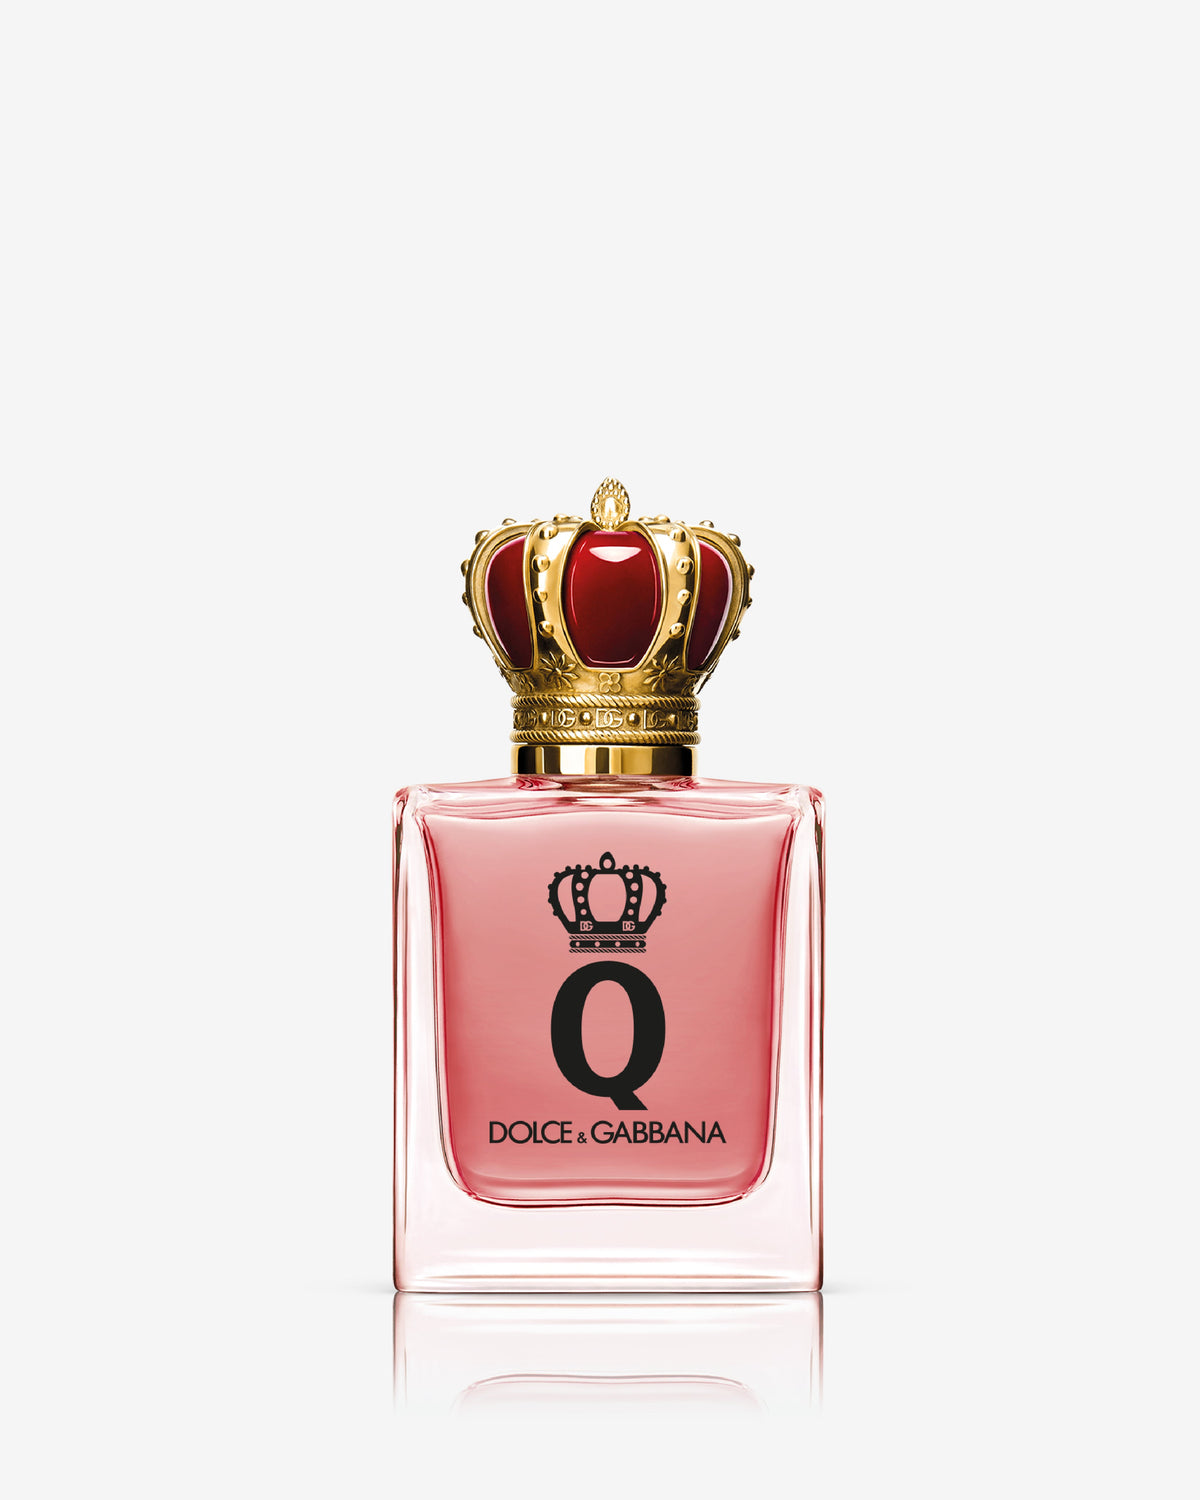 Q By Dolce &amp; Gabbana Eau De Parfum Intense